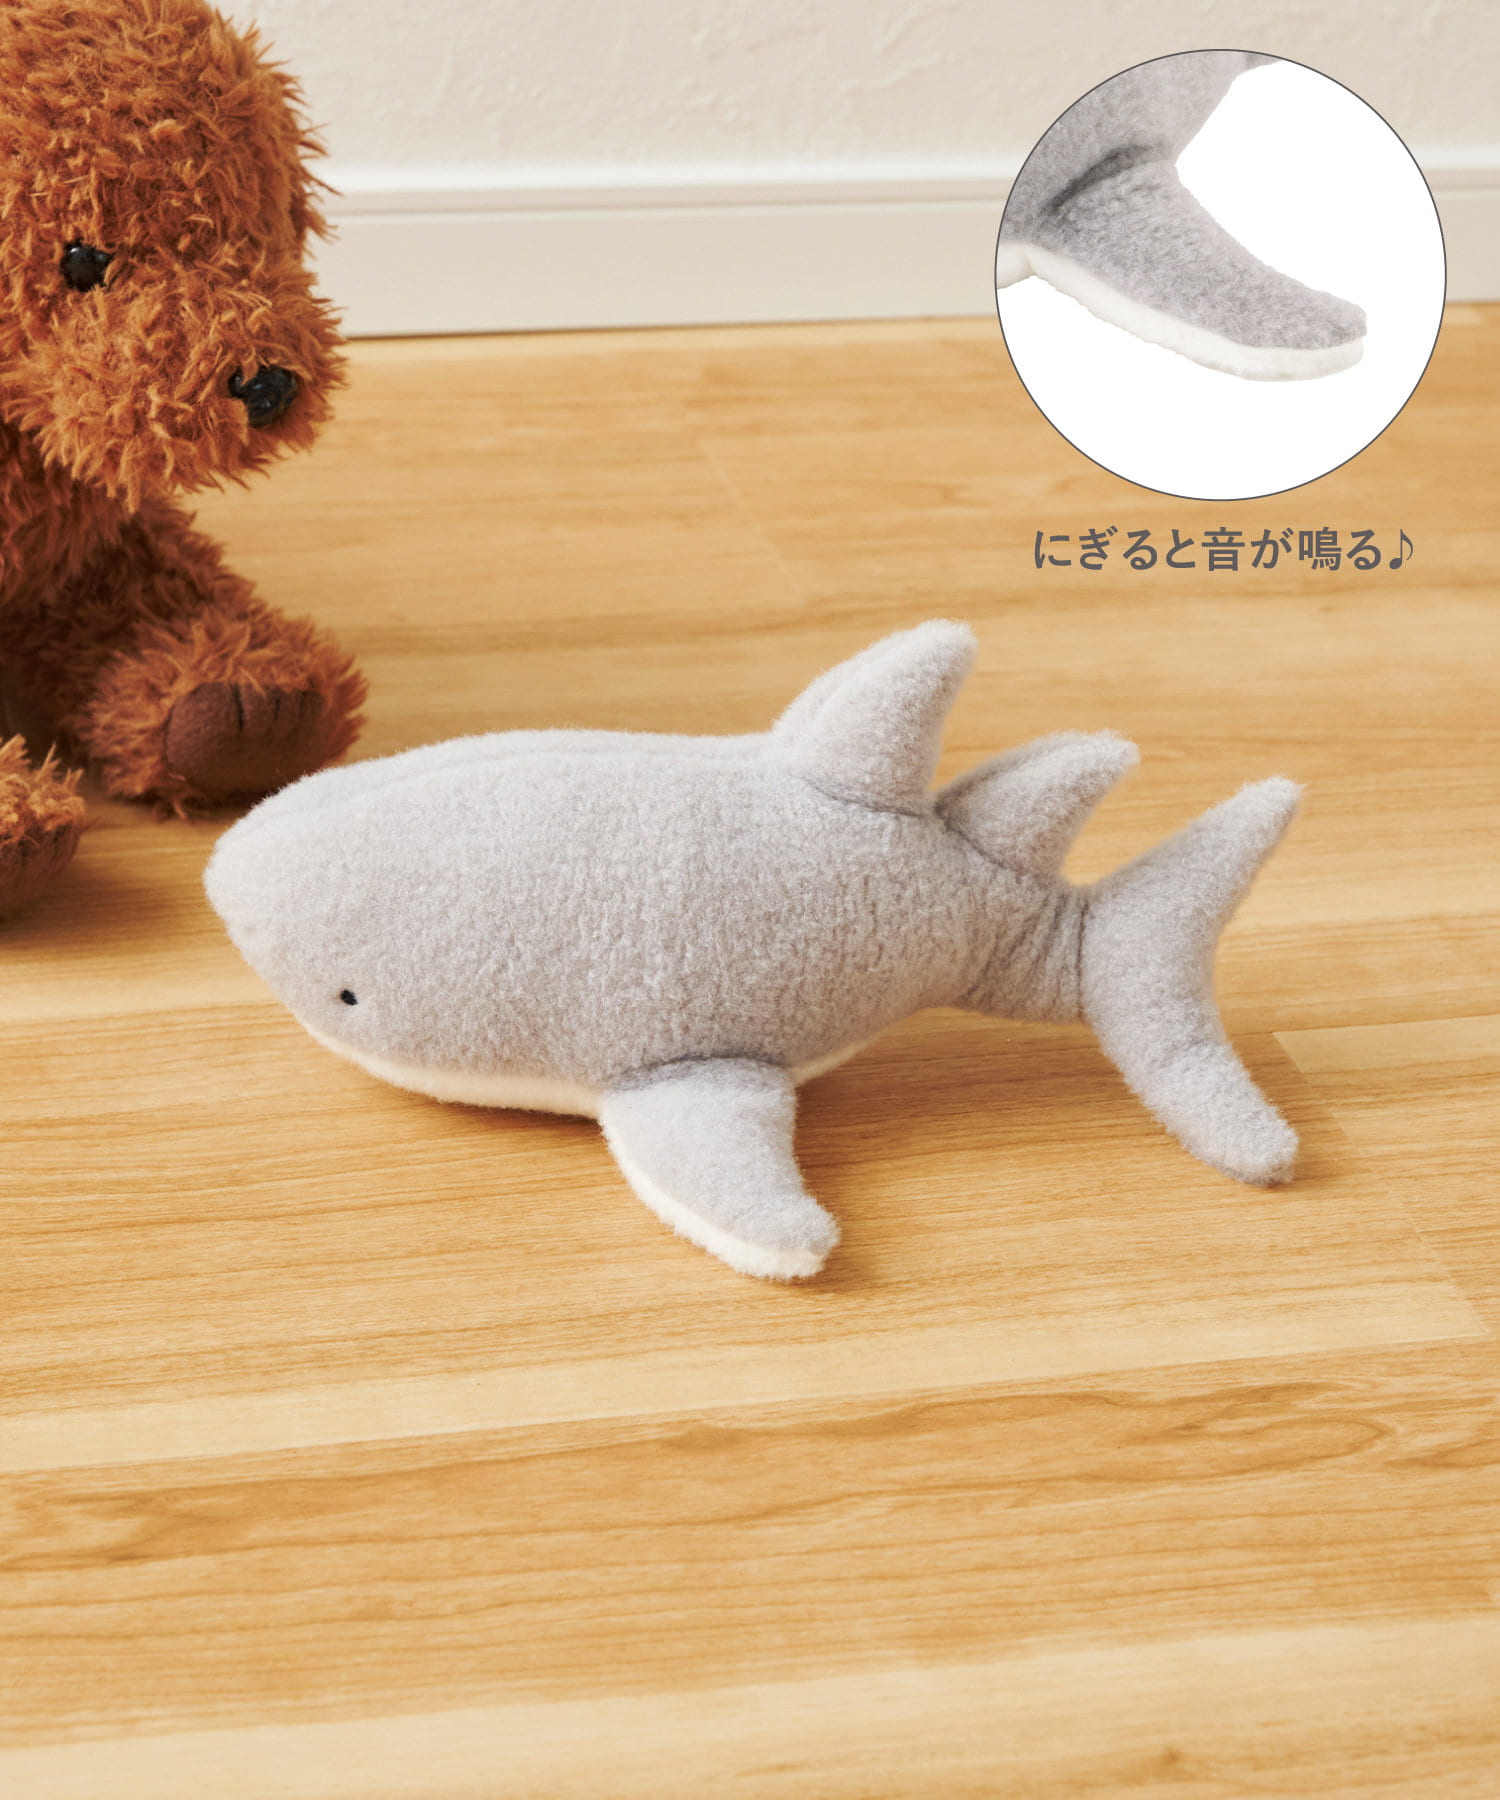 サメのおもちゃ   スリーコインズライフスタイル